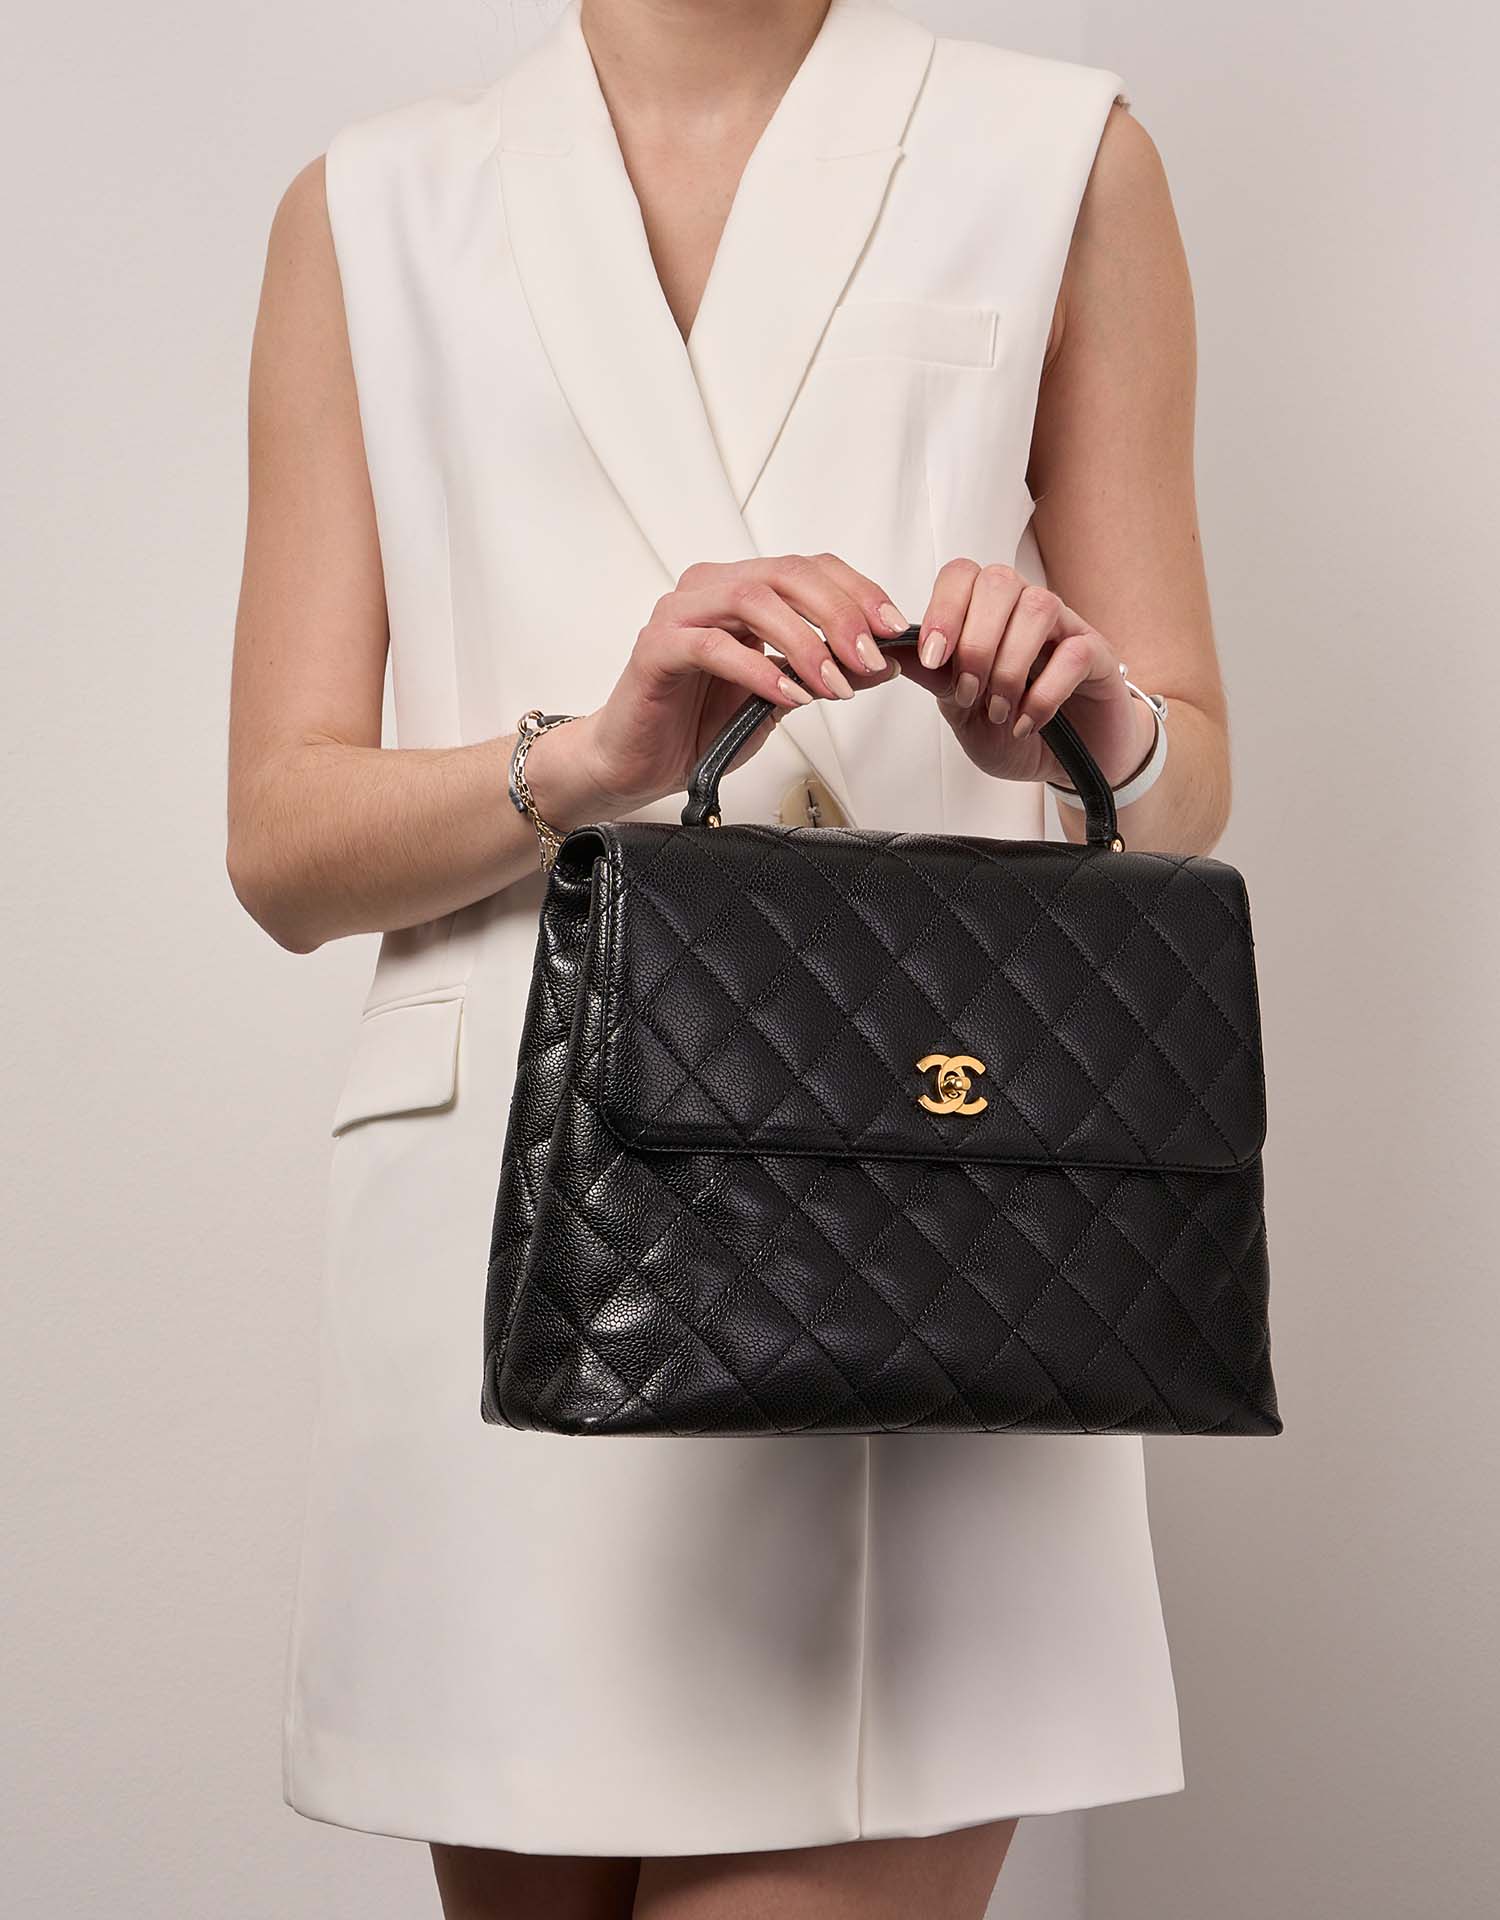 Chanel TimelessHandle Large Black Sizes Worn | Verkaufen Sie Ihre Designer-Tasche auf Saclab.com